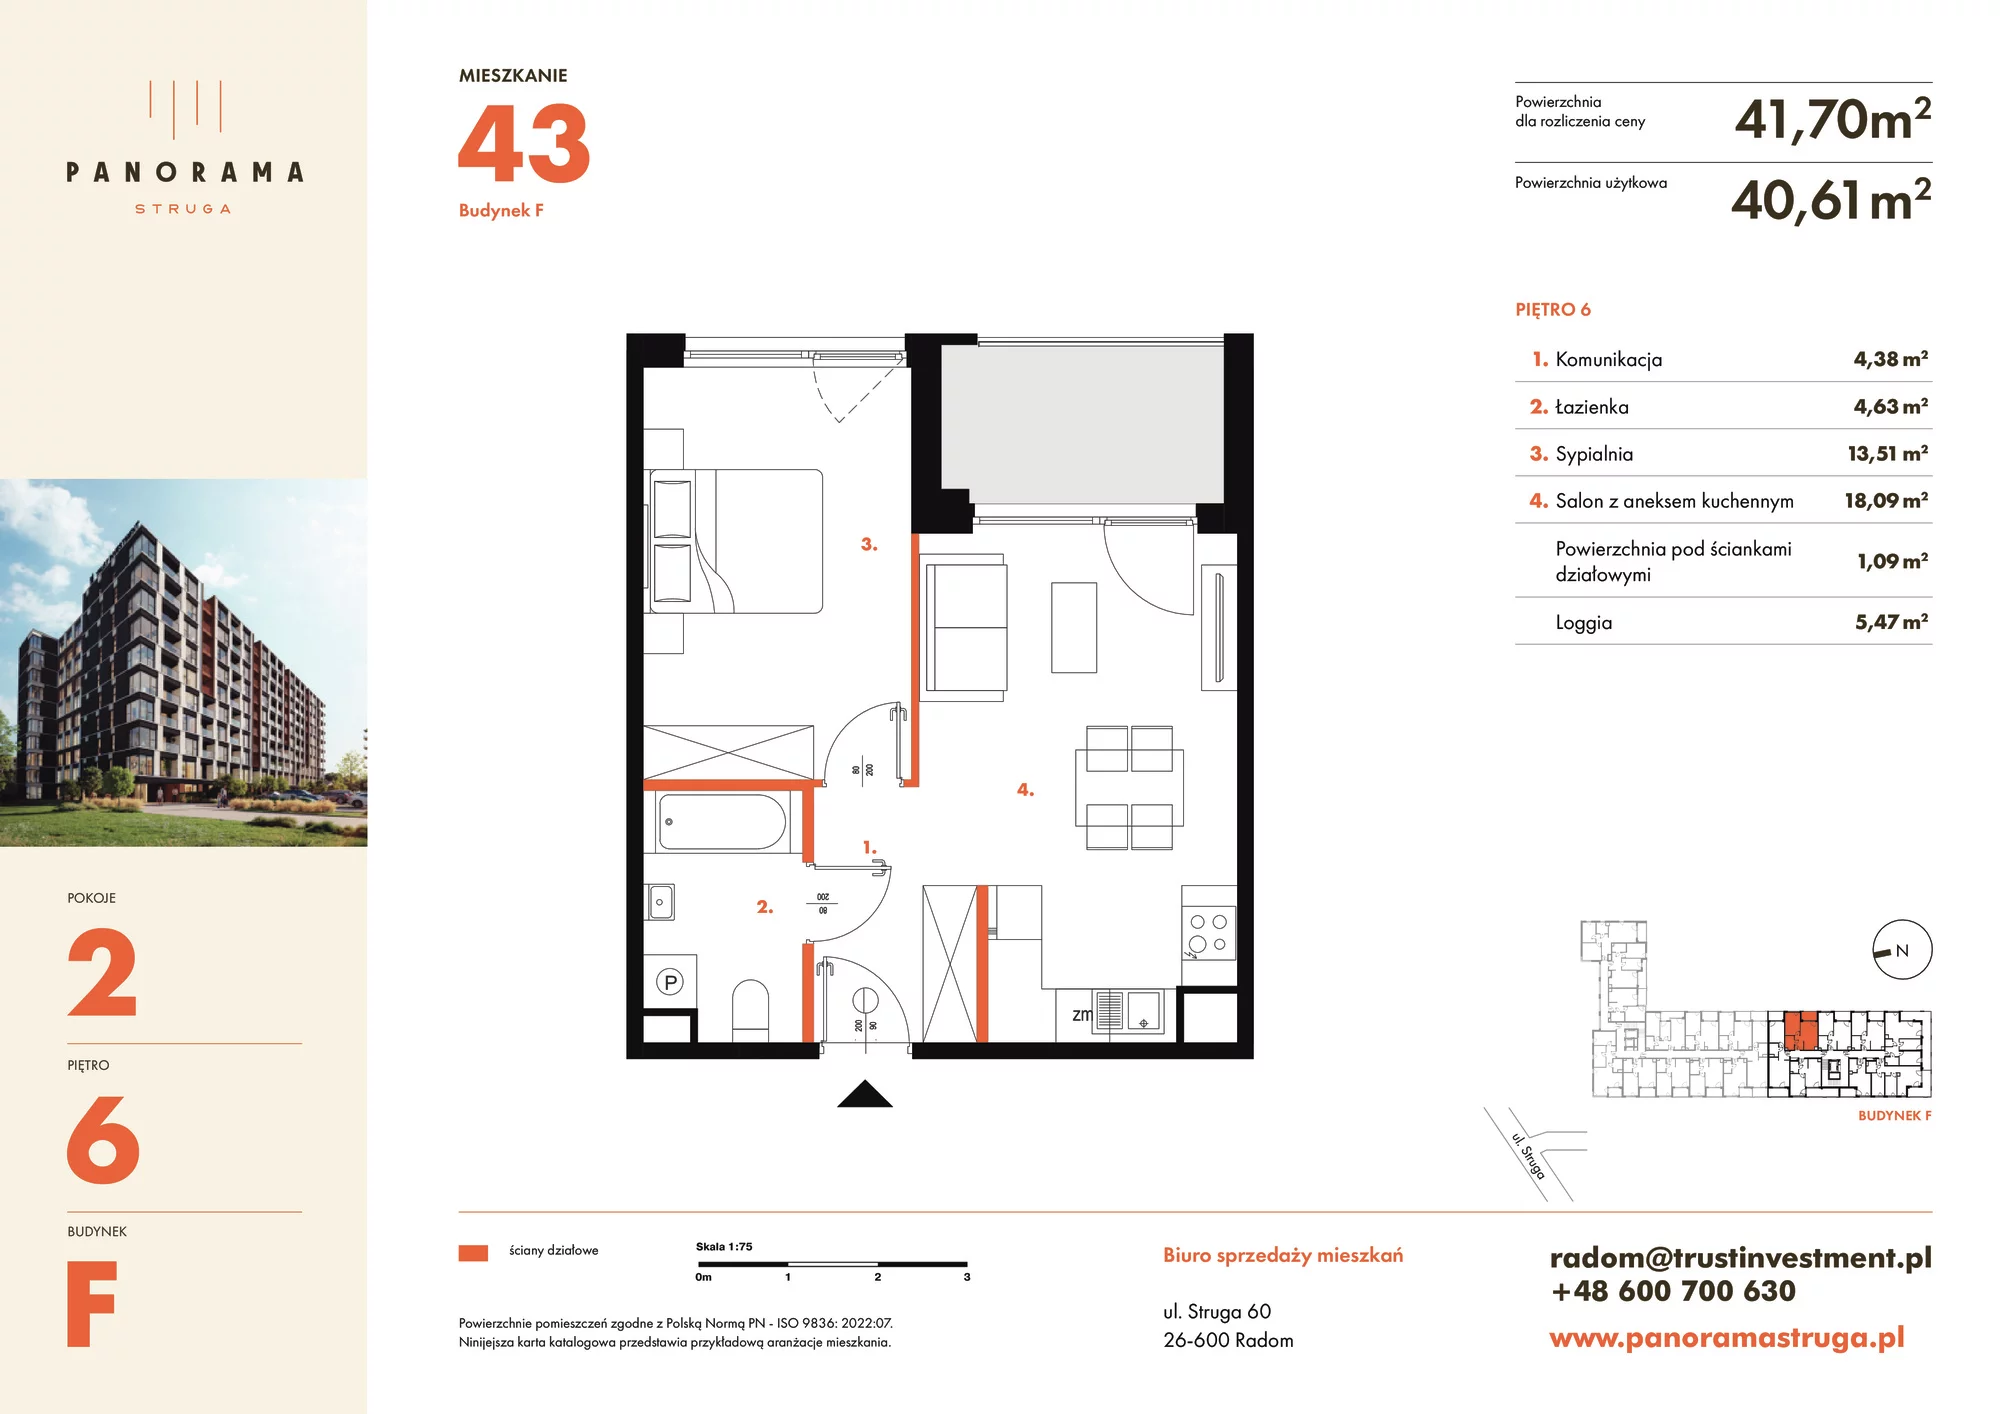 Mieszkanie 41,70 m², piętro 6, oferta nr F43, Panorama Struga, Radom, Śródmieście, ul. Andrzeja Struga 60